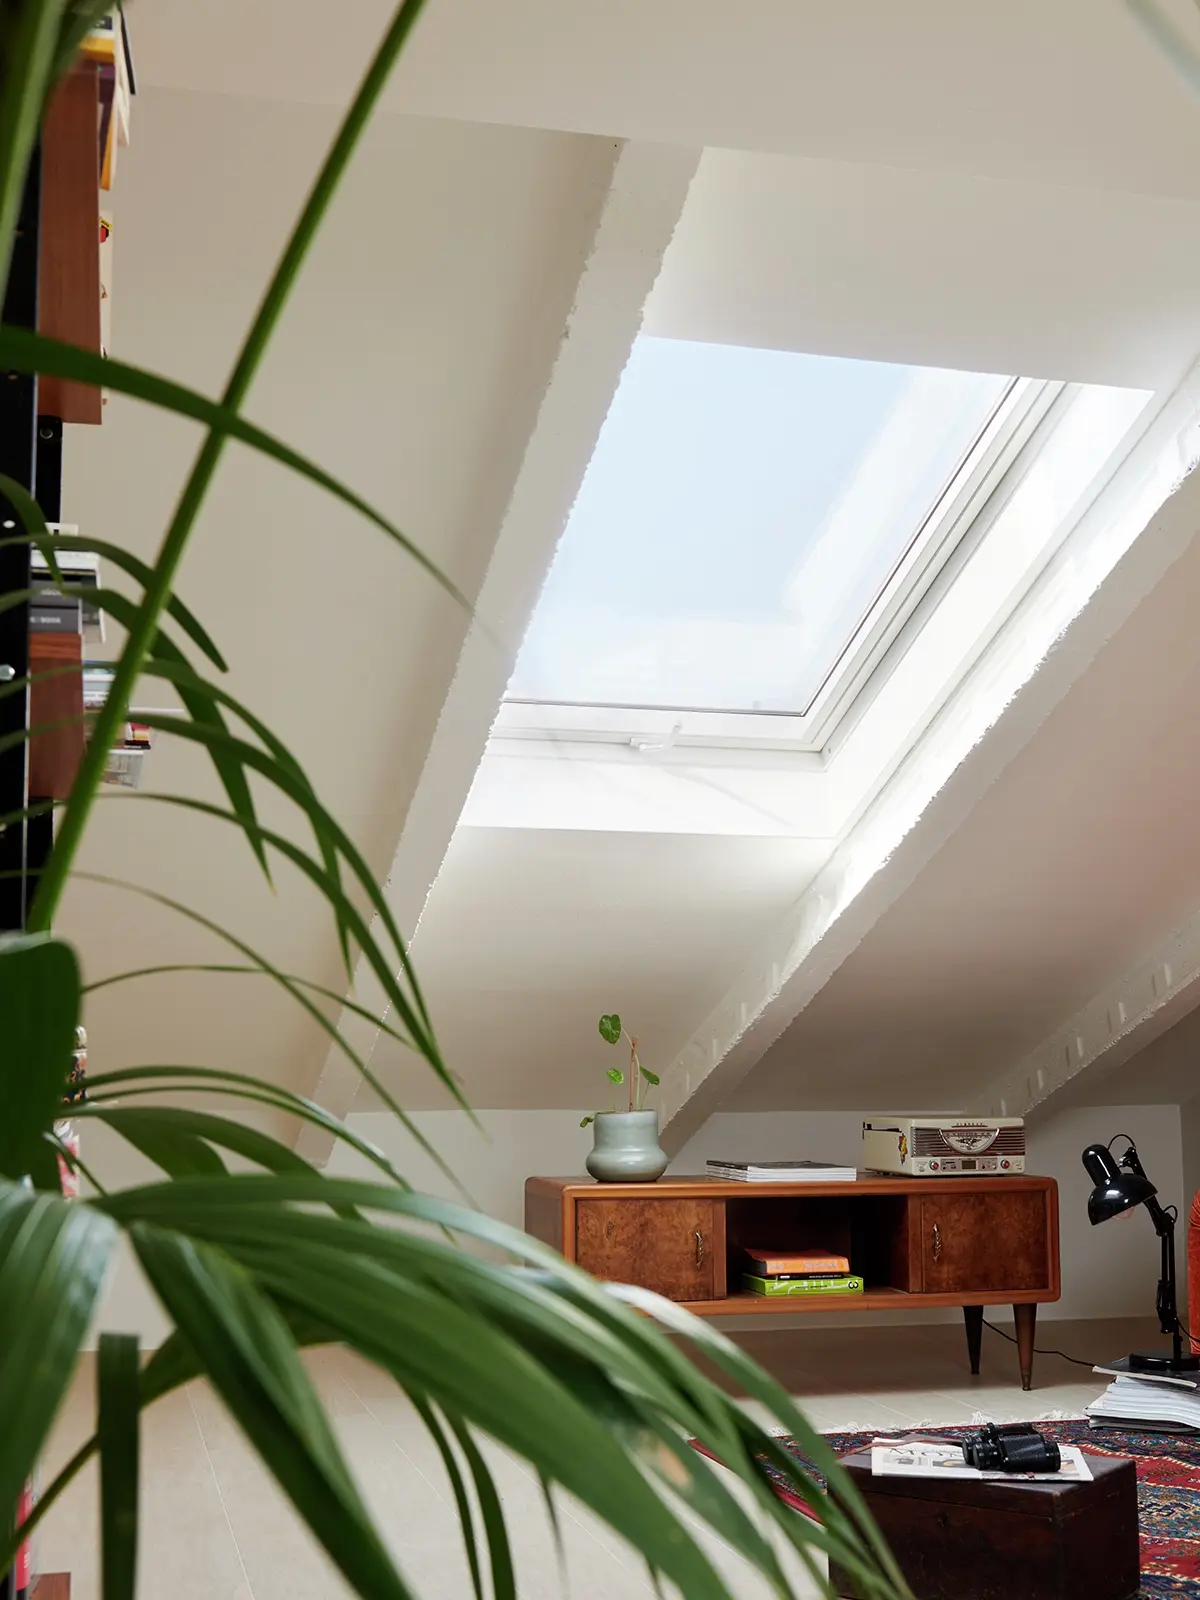 Bureau à domicile confortable sous les combles avec lumière naturelle provenant d'une fenêtre de toit VELUX, bureau vintage et plantes.